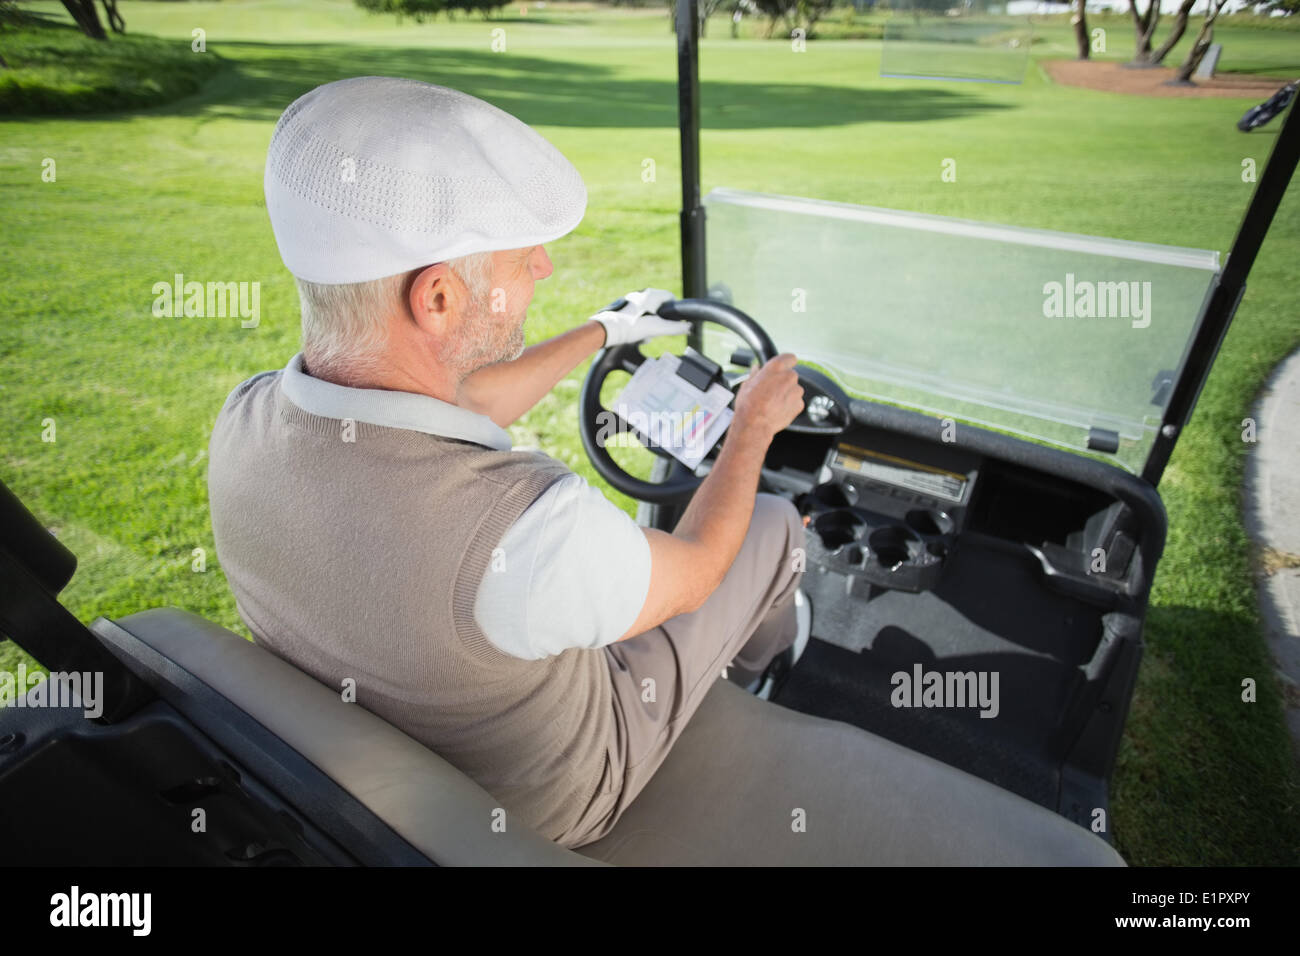 Felice golfista alla guida della sua golf buggy Foto Stock